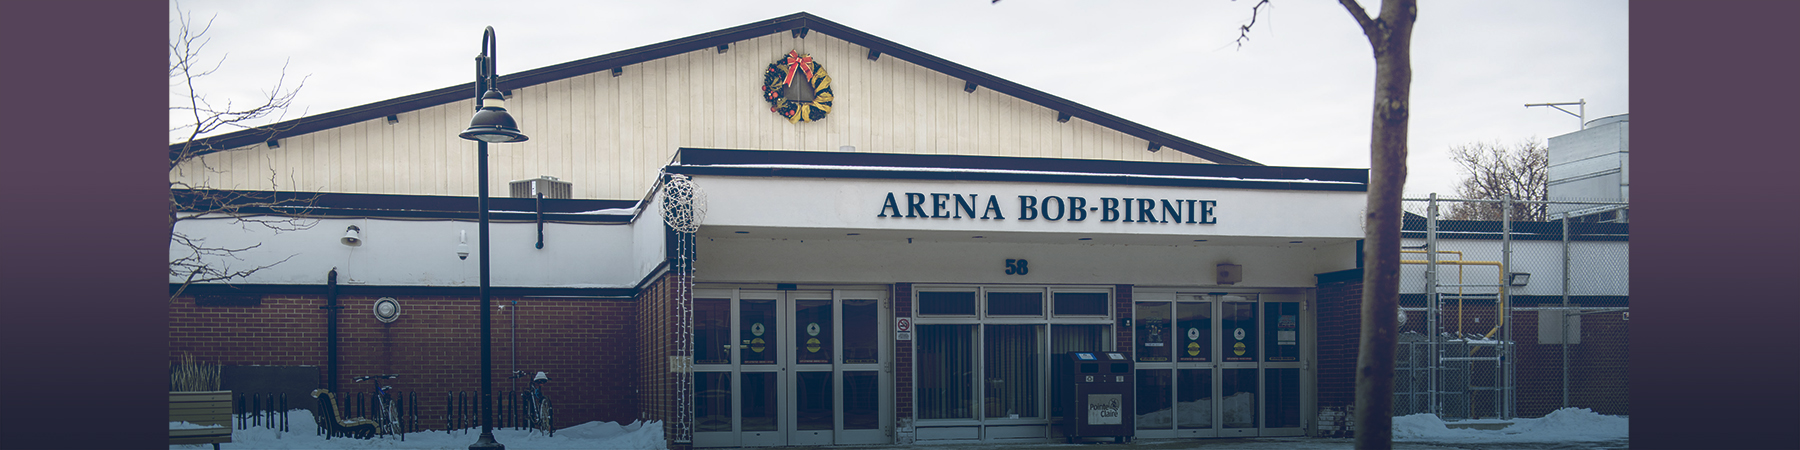 Mises à jour importantes concernant l’aréna Bob-Birnie